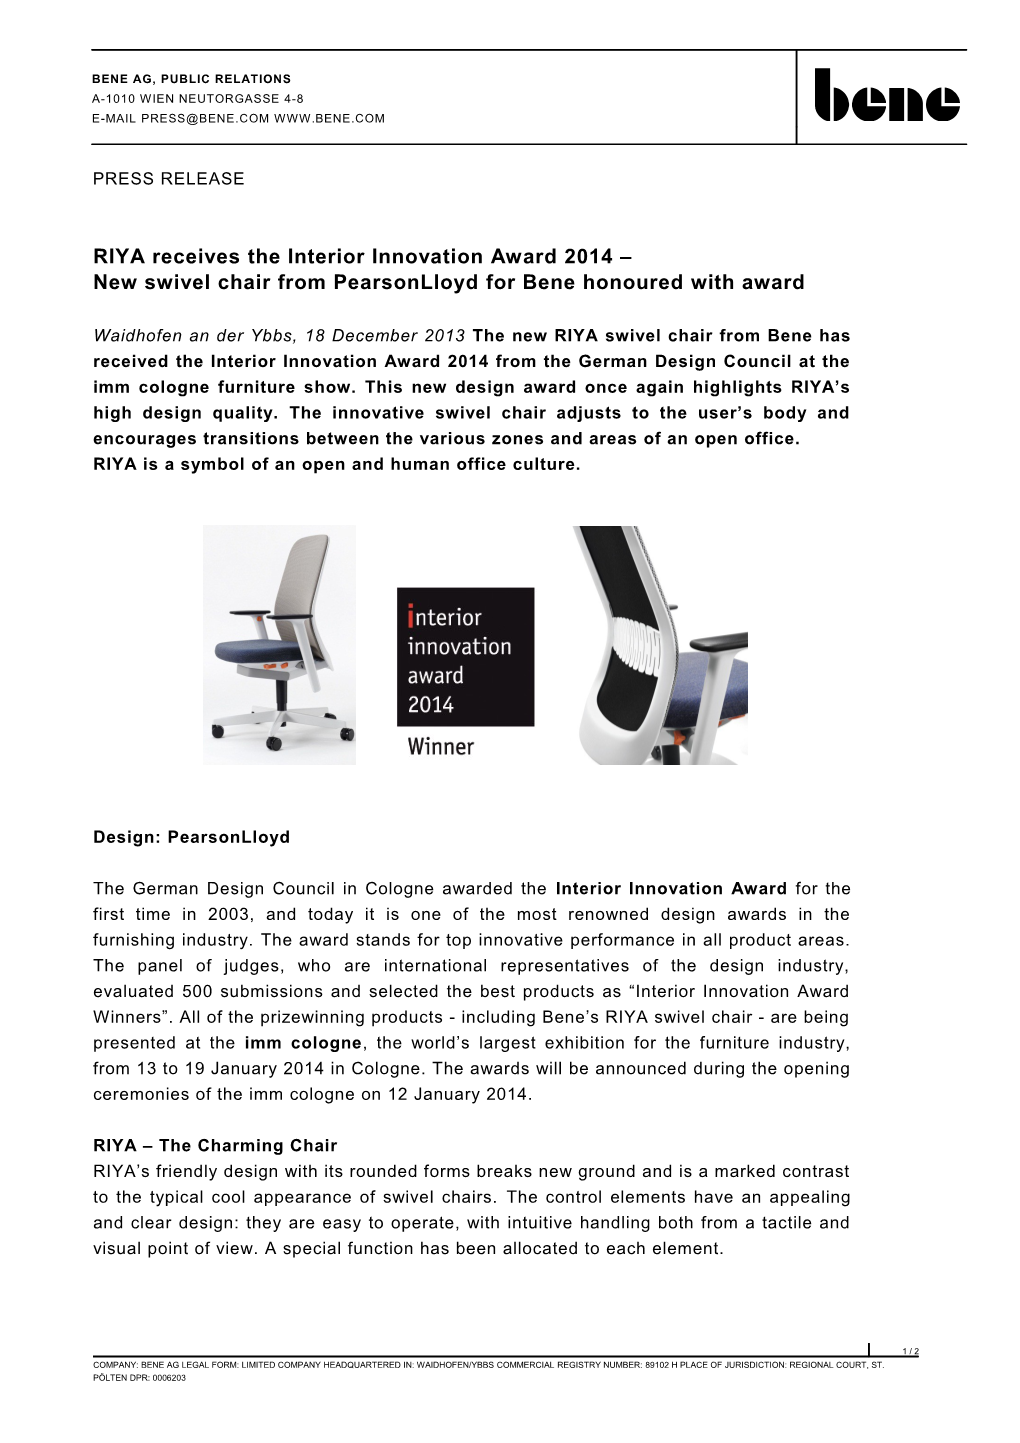 RIYA Receives the Interior Innovation Award 2014